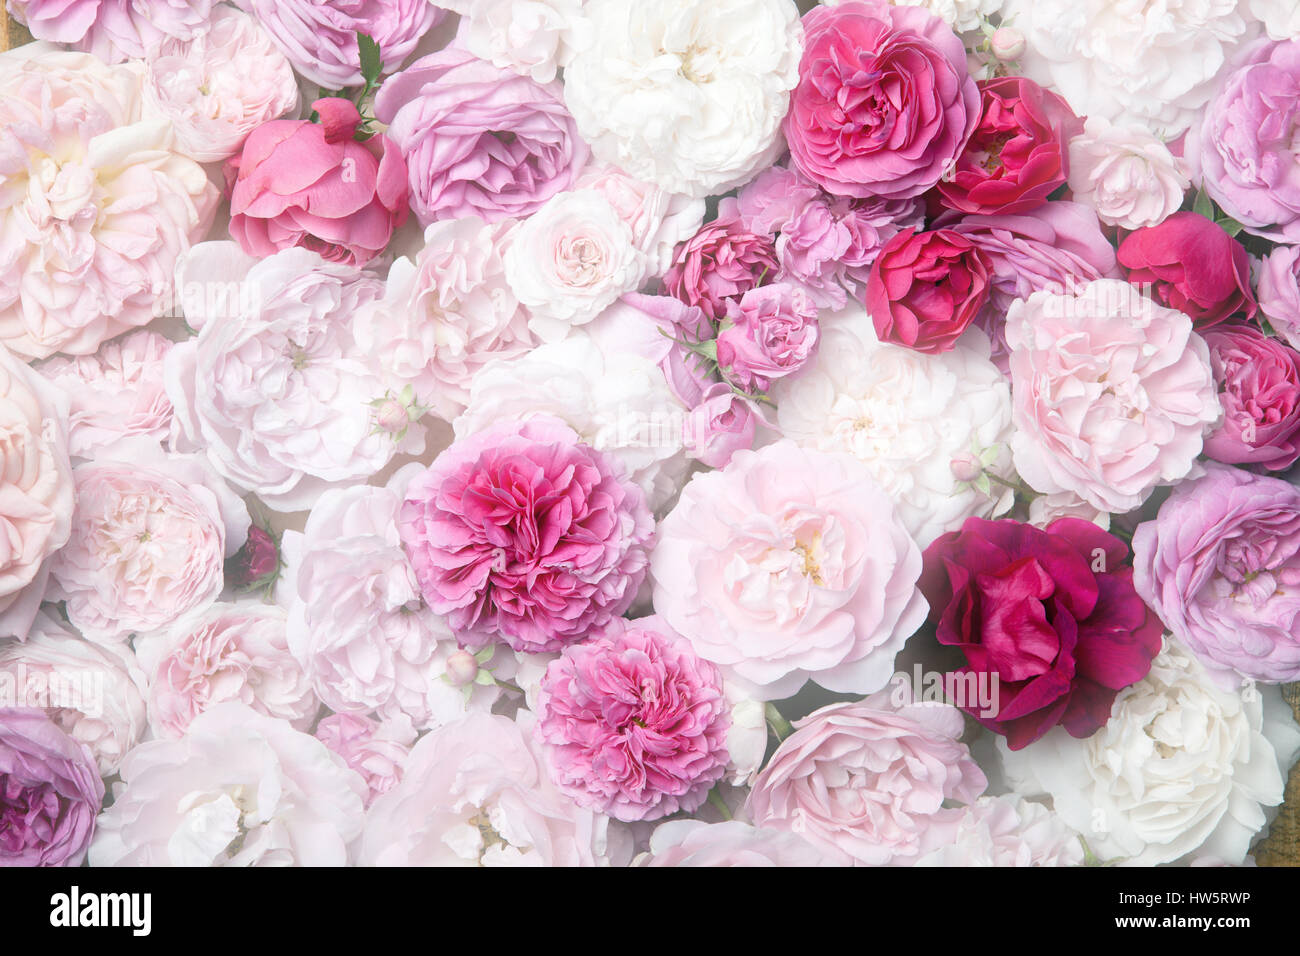 Image de texture de fond roses vintage rose Banque D'Images